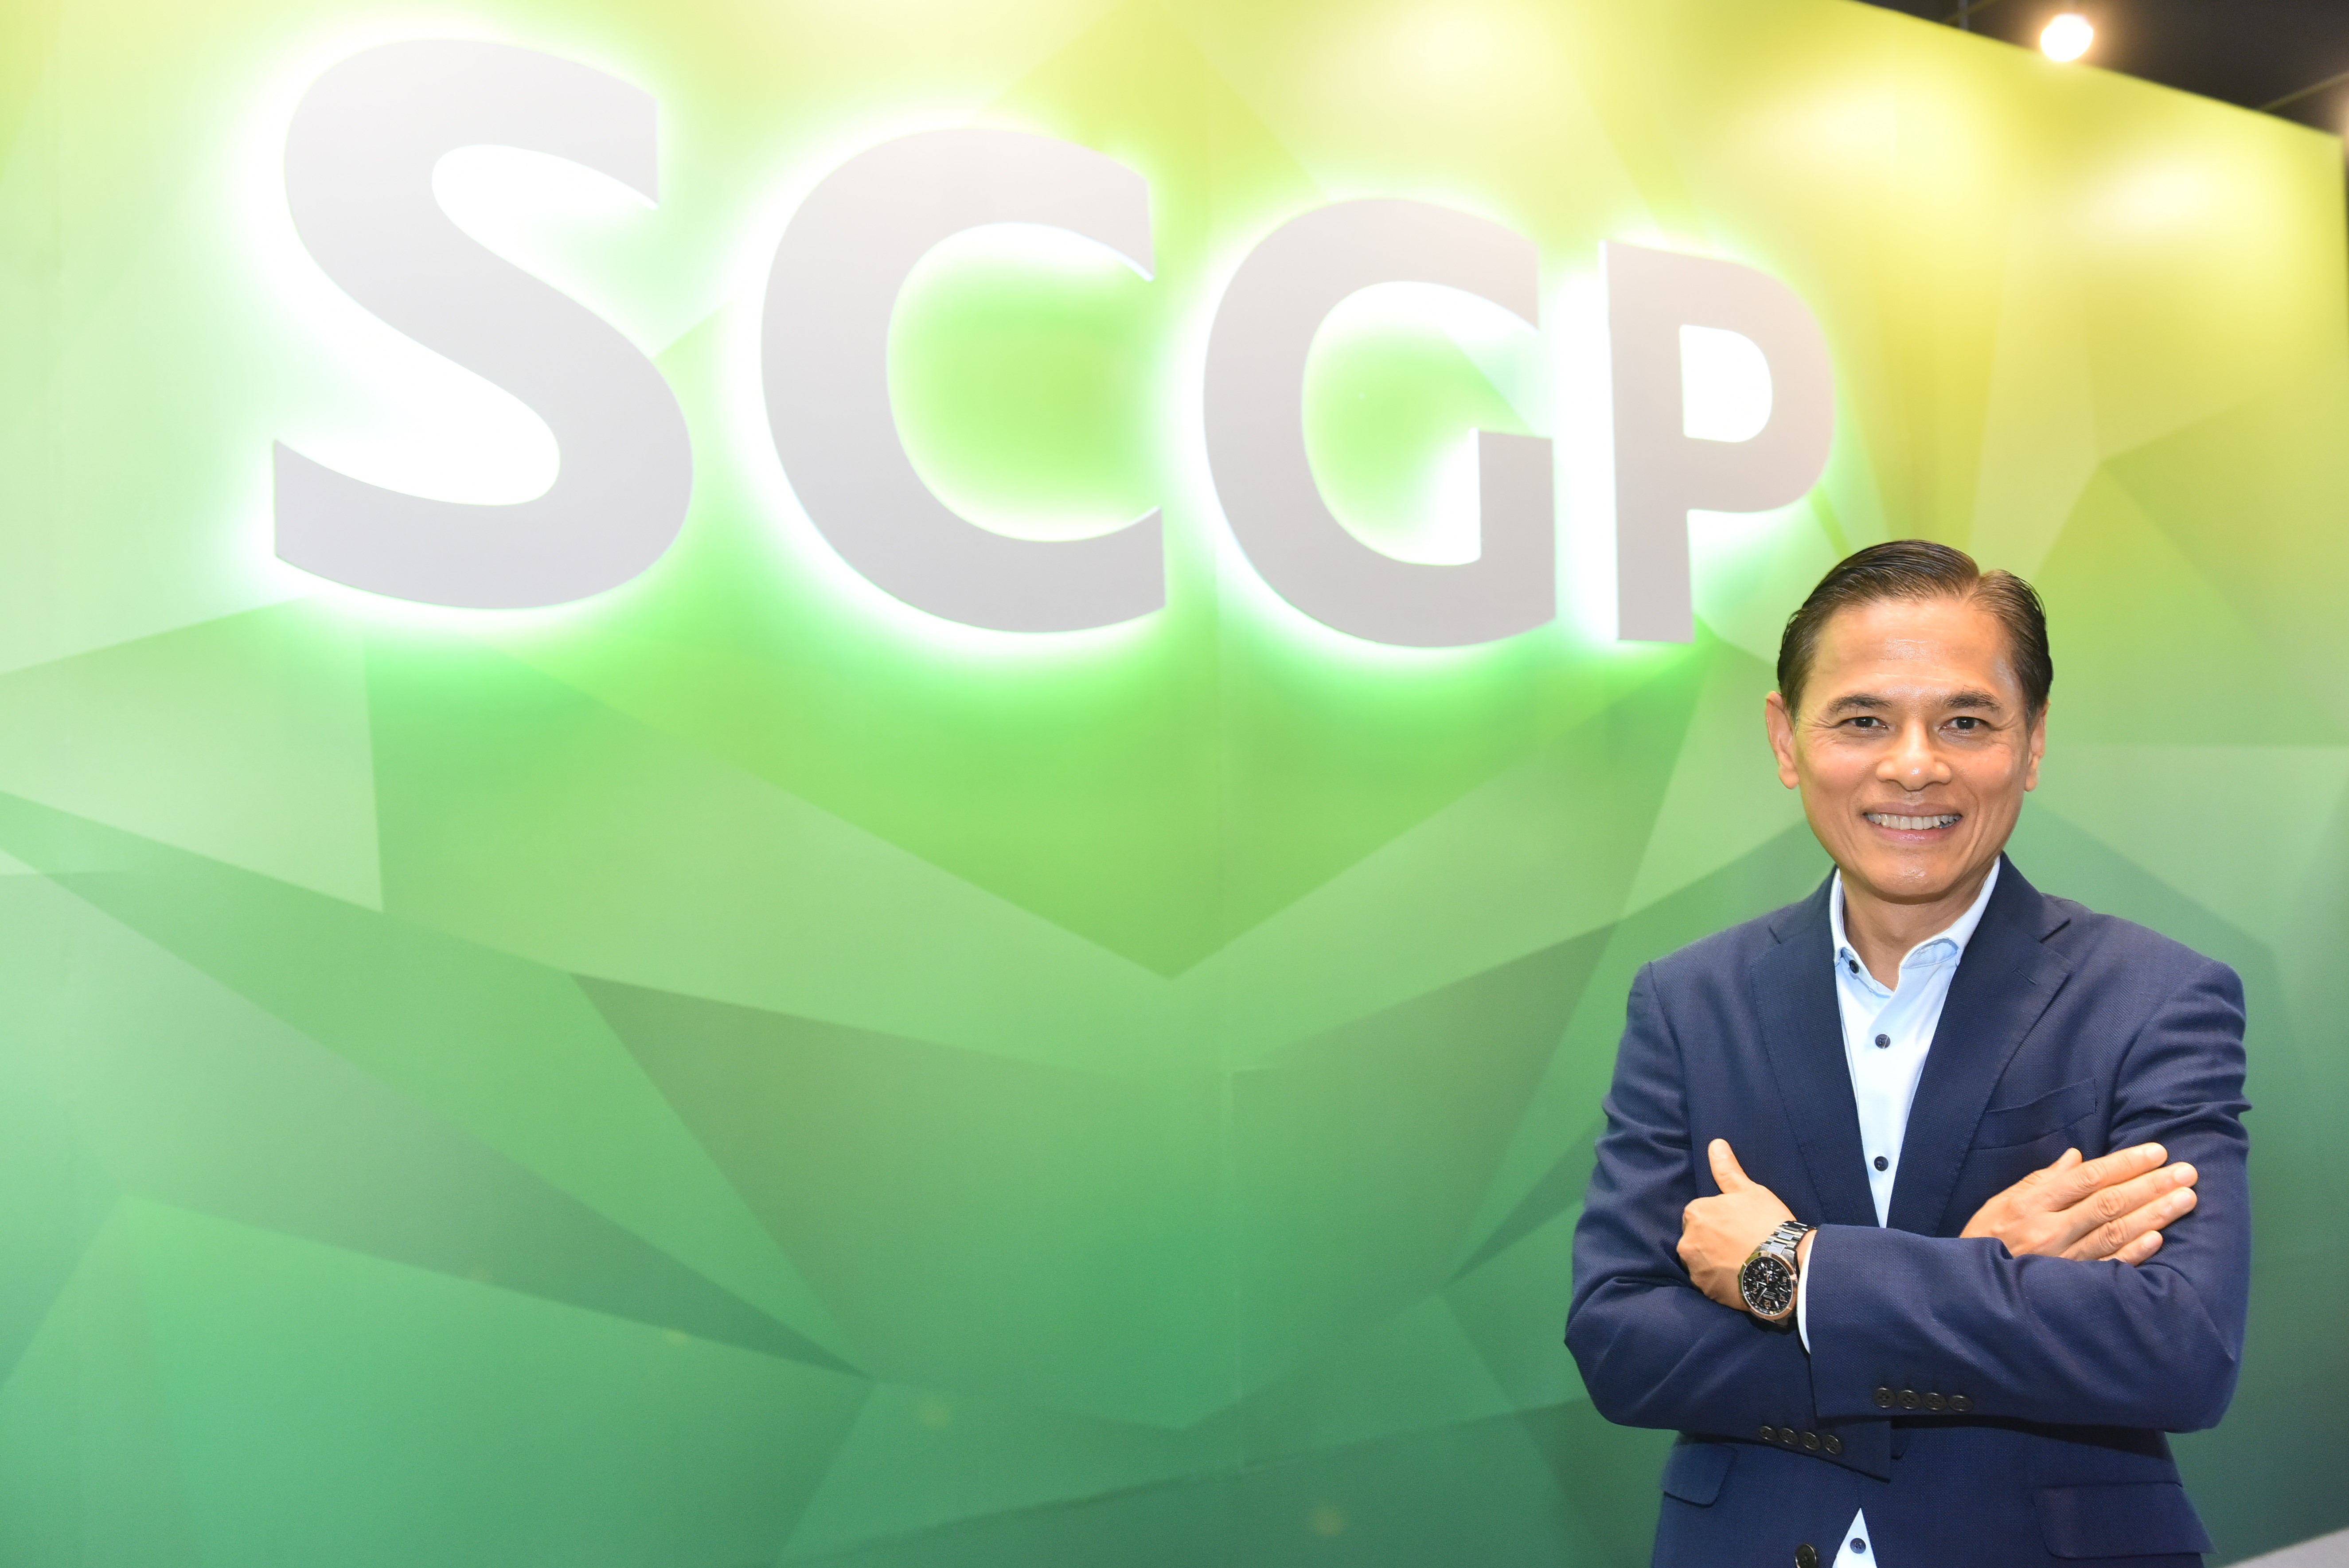 SCGP โชว์ศักยภาพ 9 เดือนแรก ทำกำไรสุทธิ 4,971 ล้านบาท เพิ่มขึ้นร้อยละ 22 ชูโมเดลธุรกิจแข็งแกร่ง สินค้า บริการ และโซลูชันครบวงจร